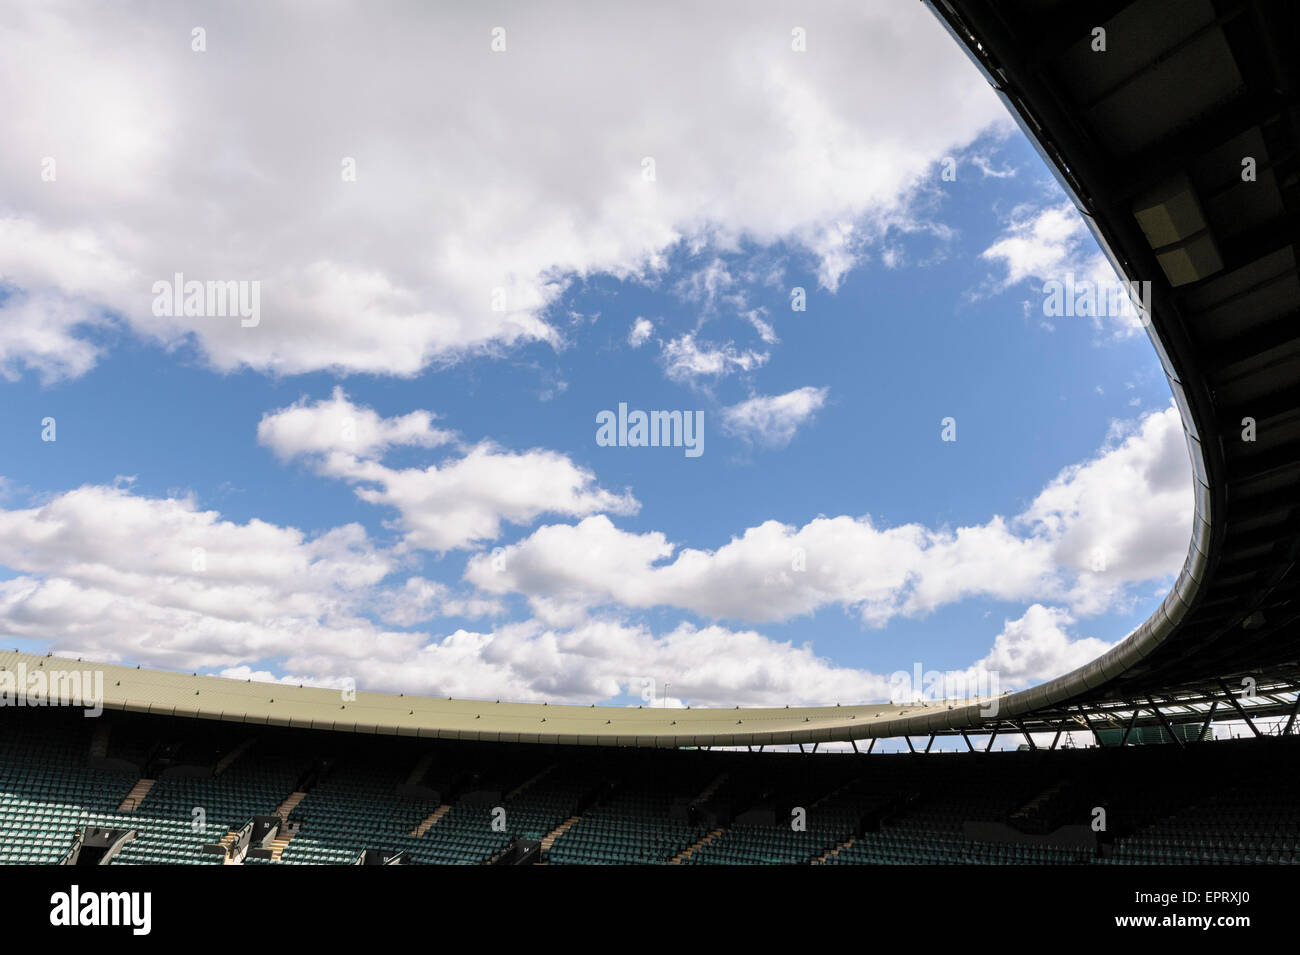 Oberstes Gericht, Wimbledon. Leer, vor Beginn der jährlichen Grand-slam-Tennis-Wettbewerb. Stockfoto